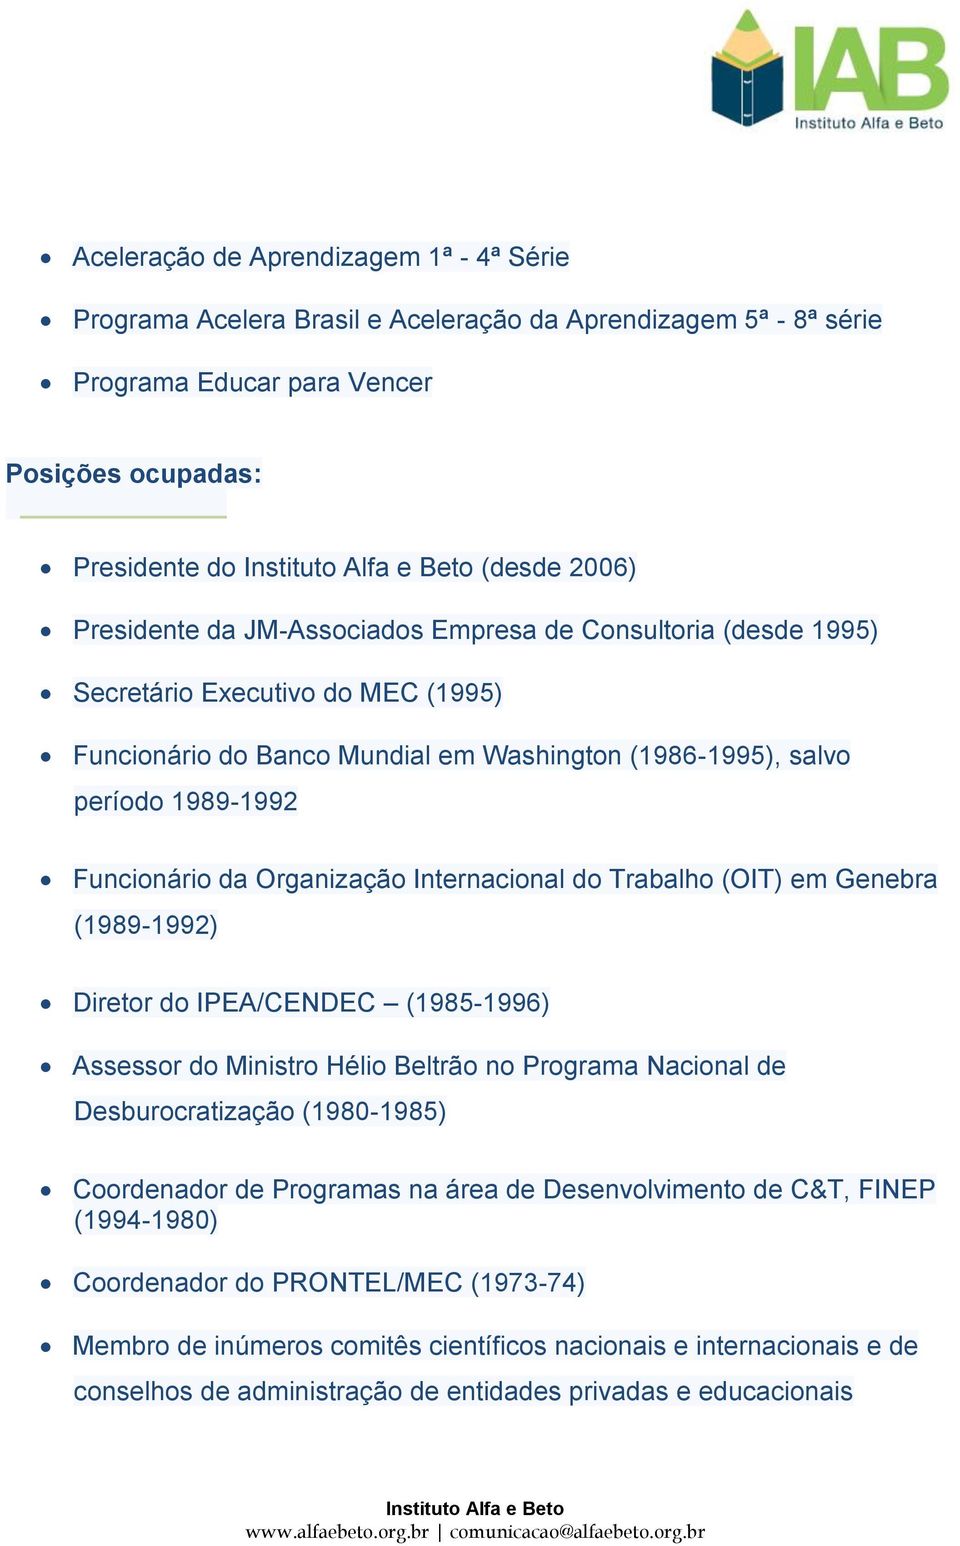 Internacional do Trabalho (OIT) em Genebra (1989-1992) Diretor do IPEA/CENDEC (1985-1996) Assessor do Ministro Hélio Beltrão no Programa Nacional de Desburocratização (1980-1985) Coordenador de